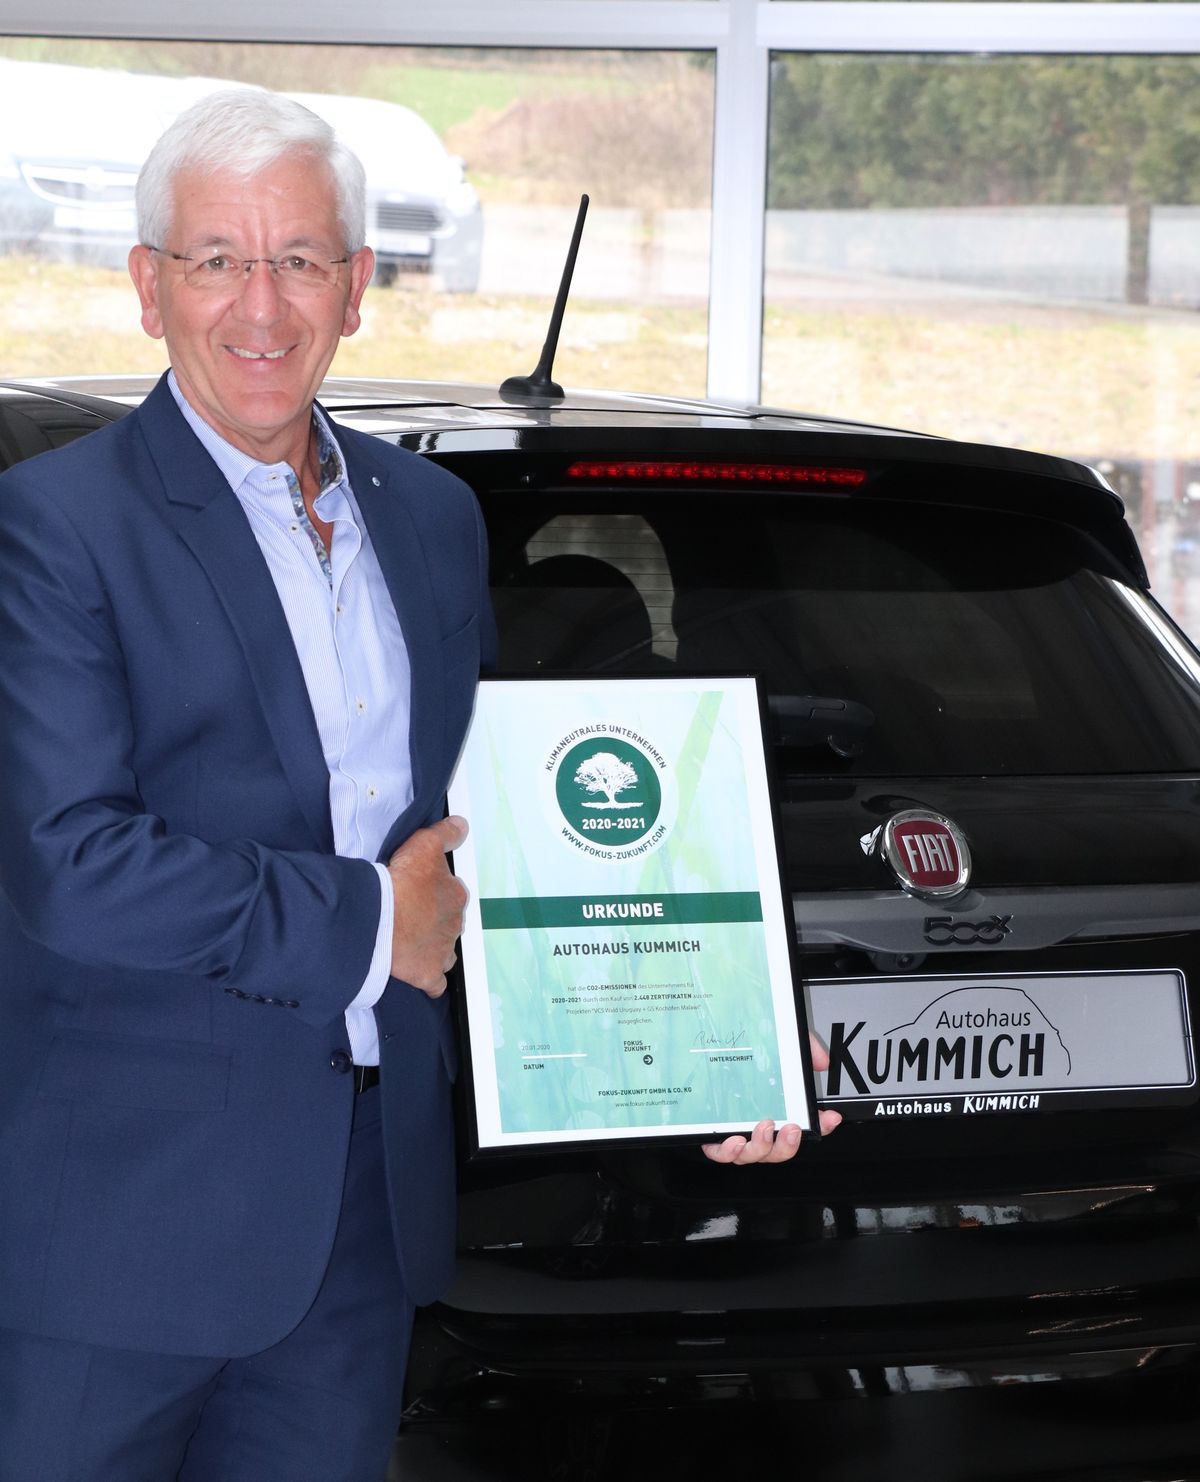 FCA-Partner Autohaus Kummich GmbH als einer der ersten deutschen Vertriebsstandorte bereits für 2020 und 2021 CO2-neutral zertifiziert